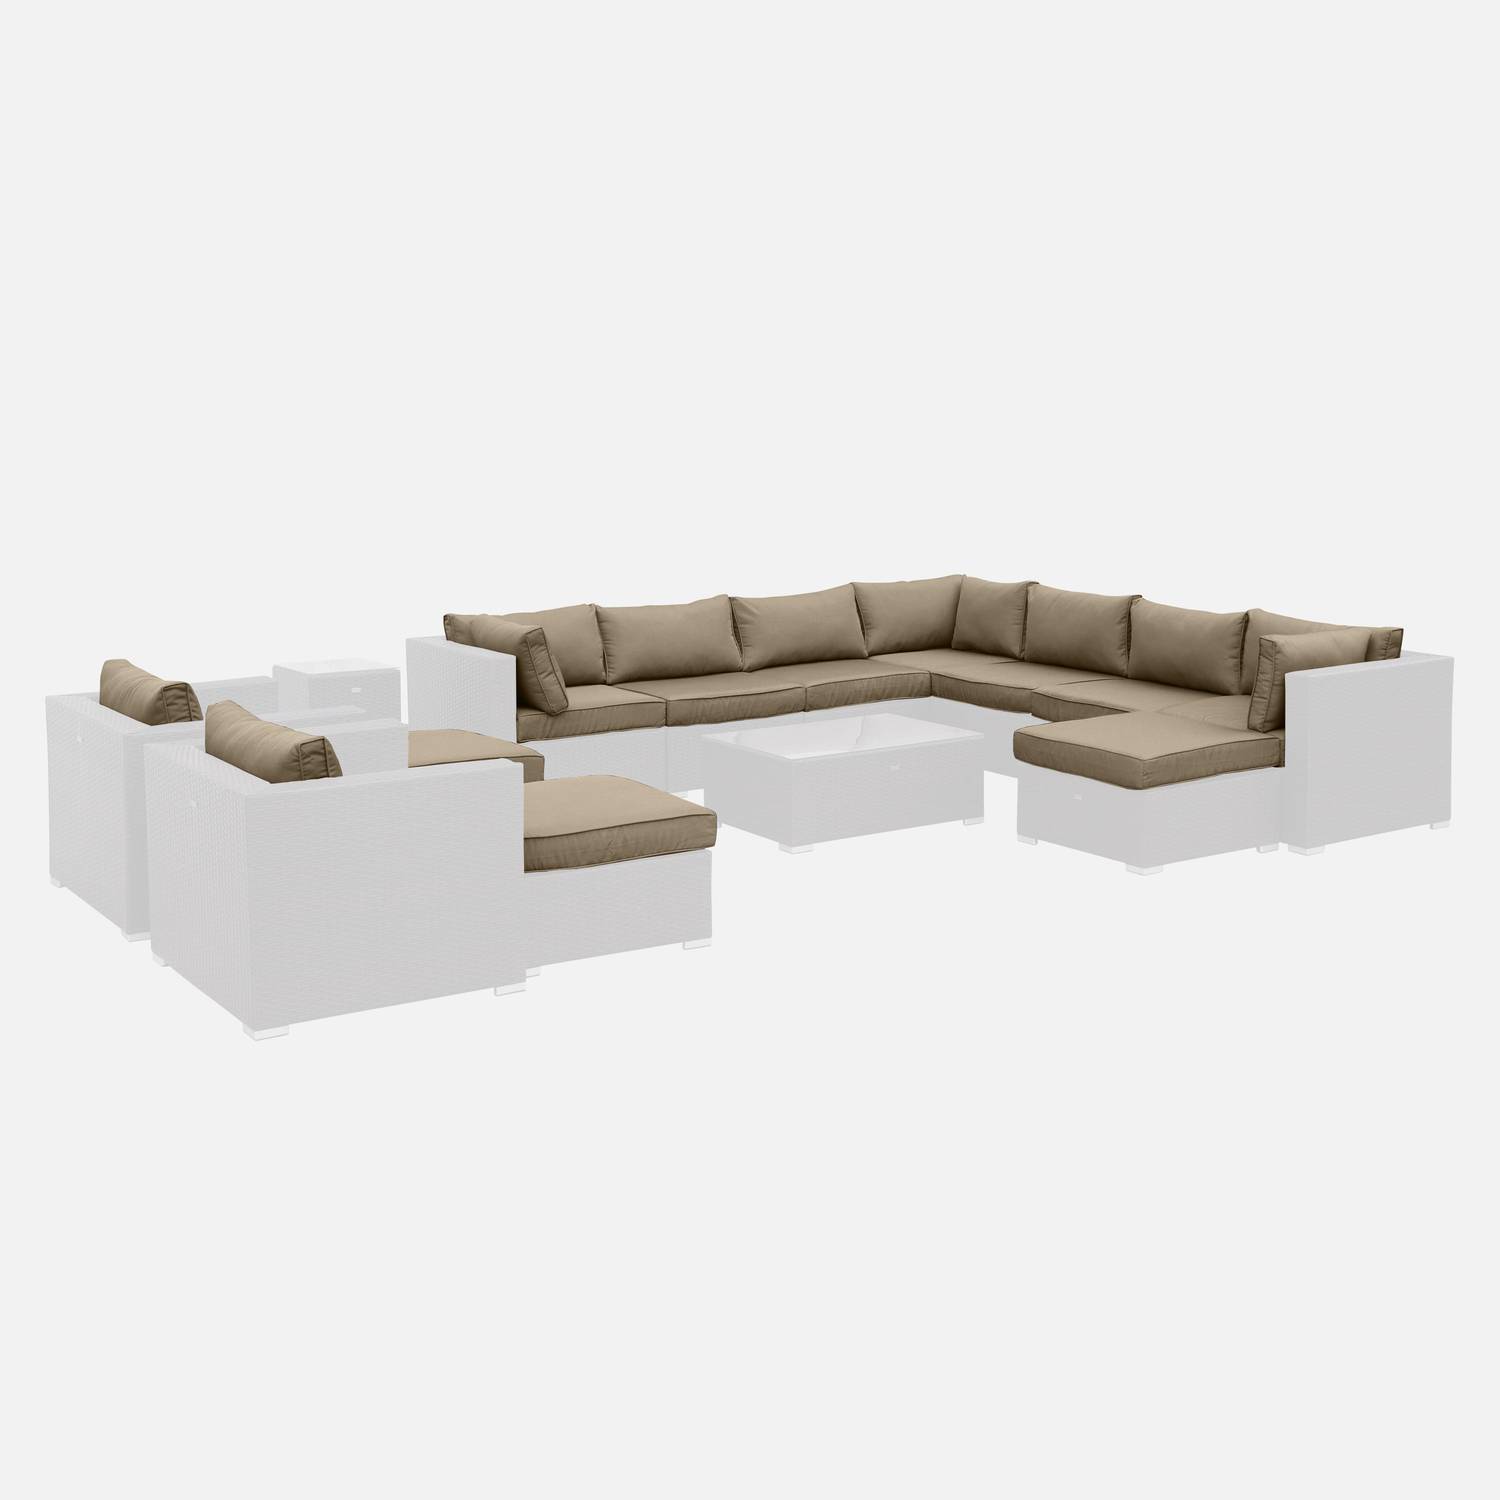 Set di fodere per cuscini, colore: Marrone, per salotto da giardino, modello: Tripoli - set completo Photo1